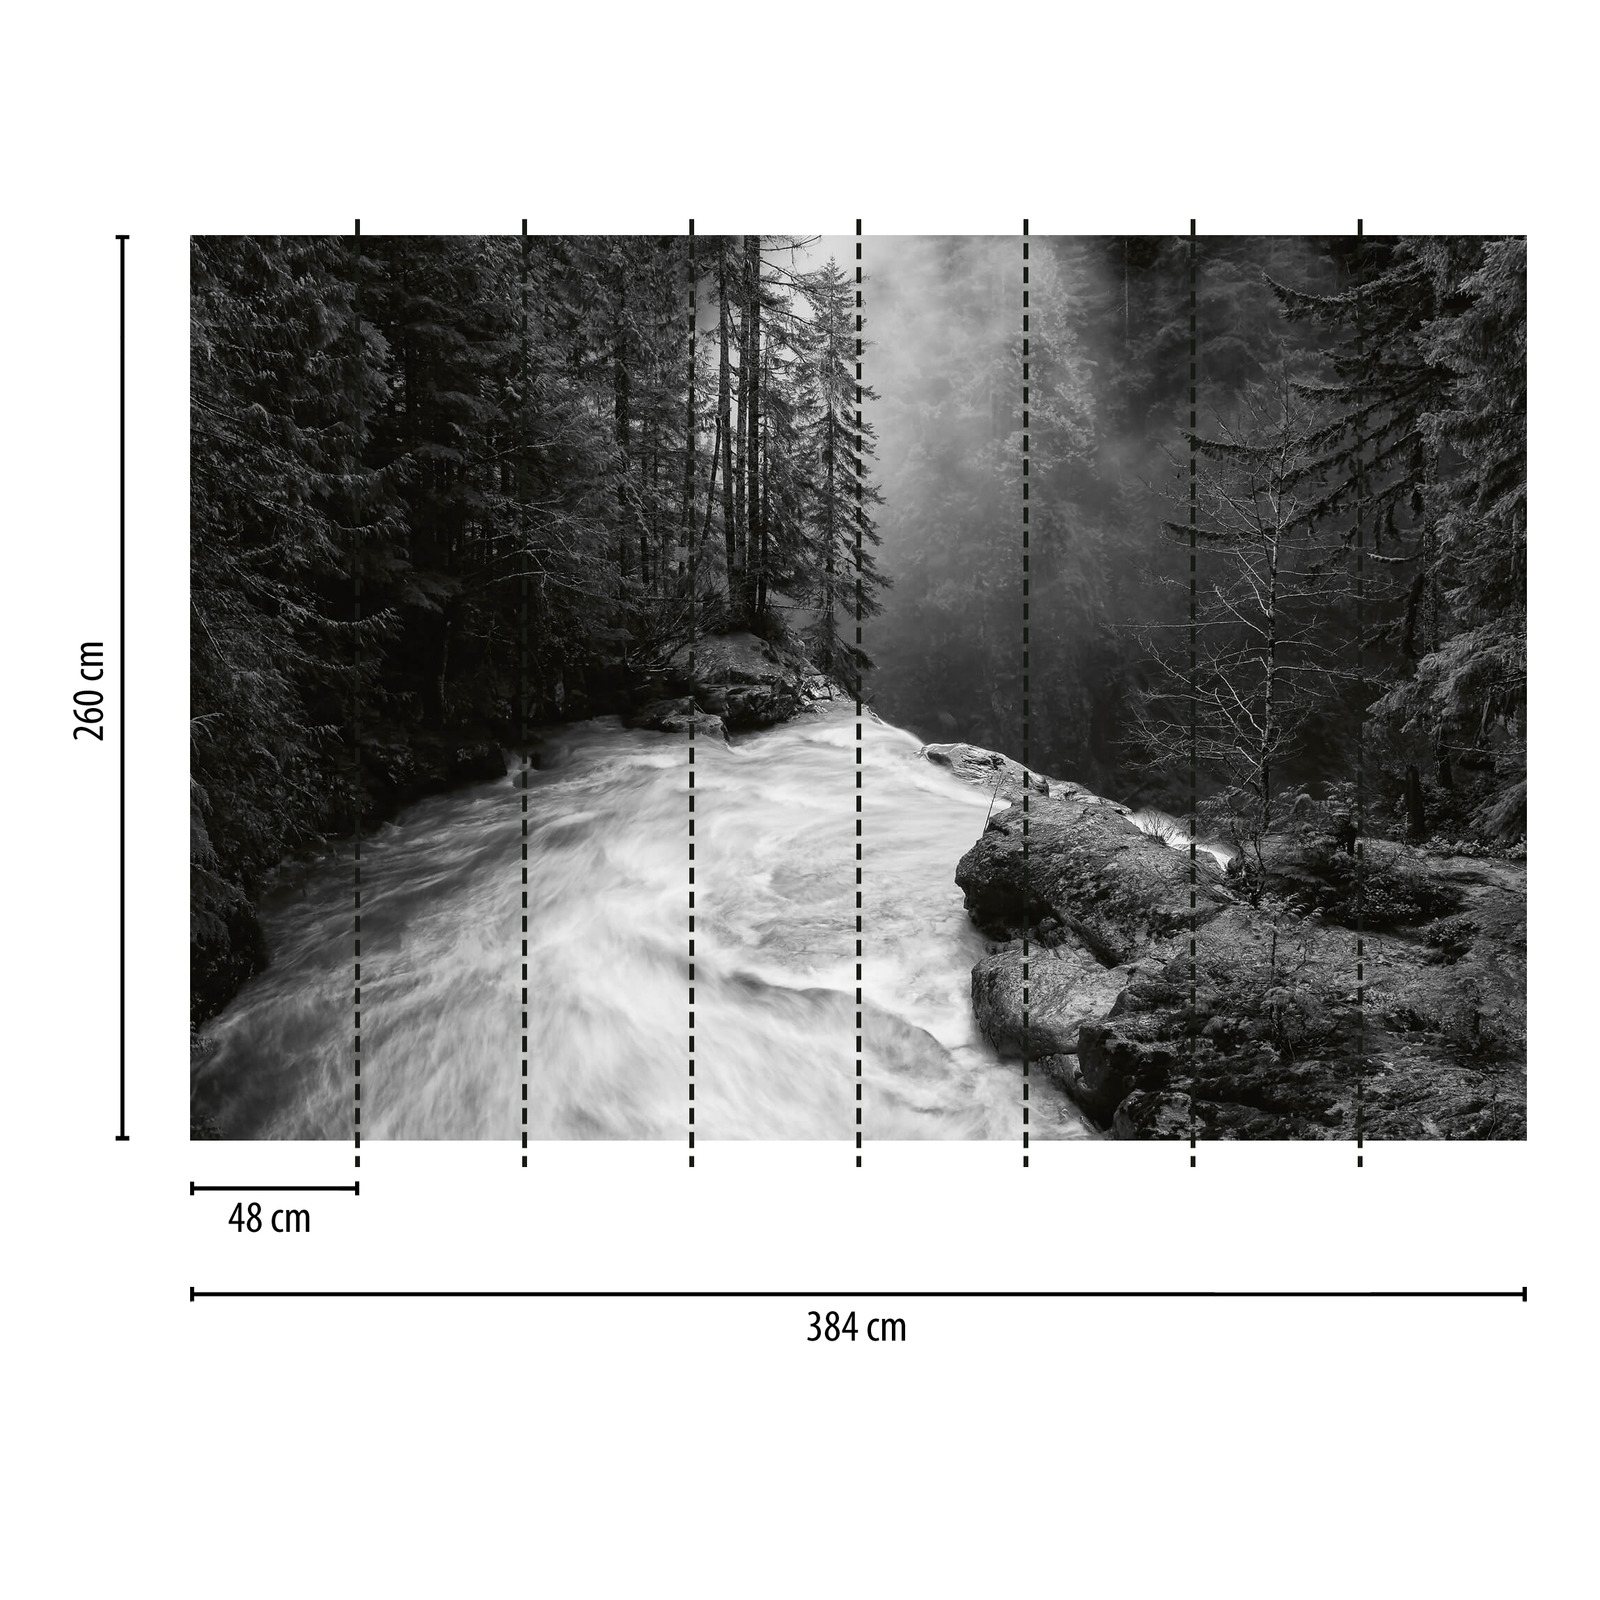             Fototapete Wald mit Wasserfall – Schwarz, Weiß, Grau
        